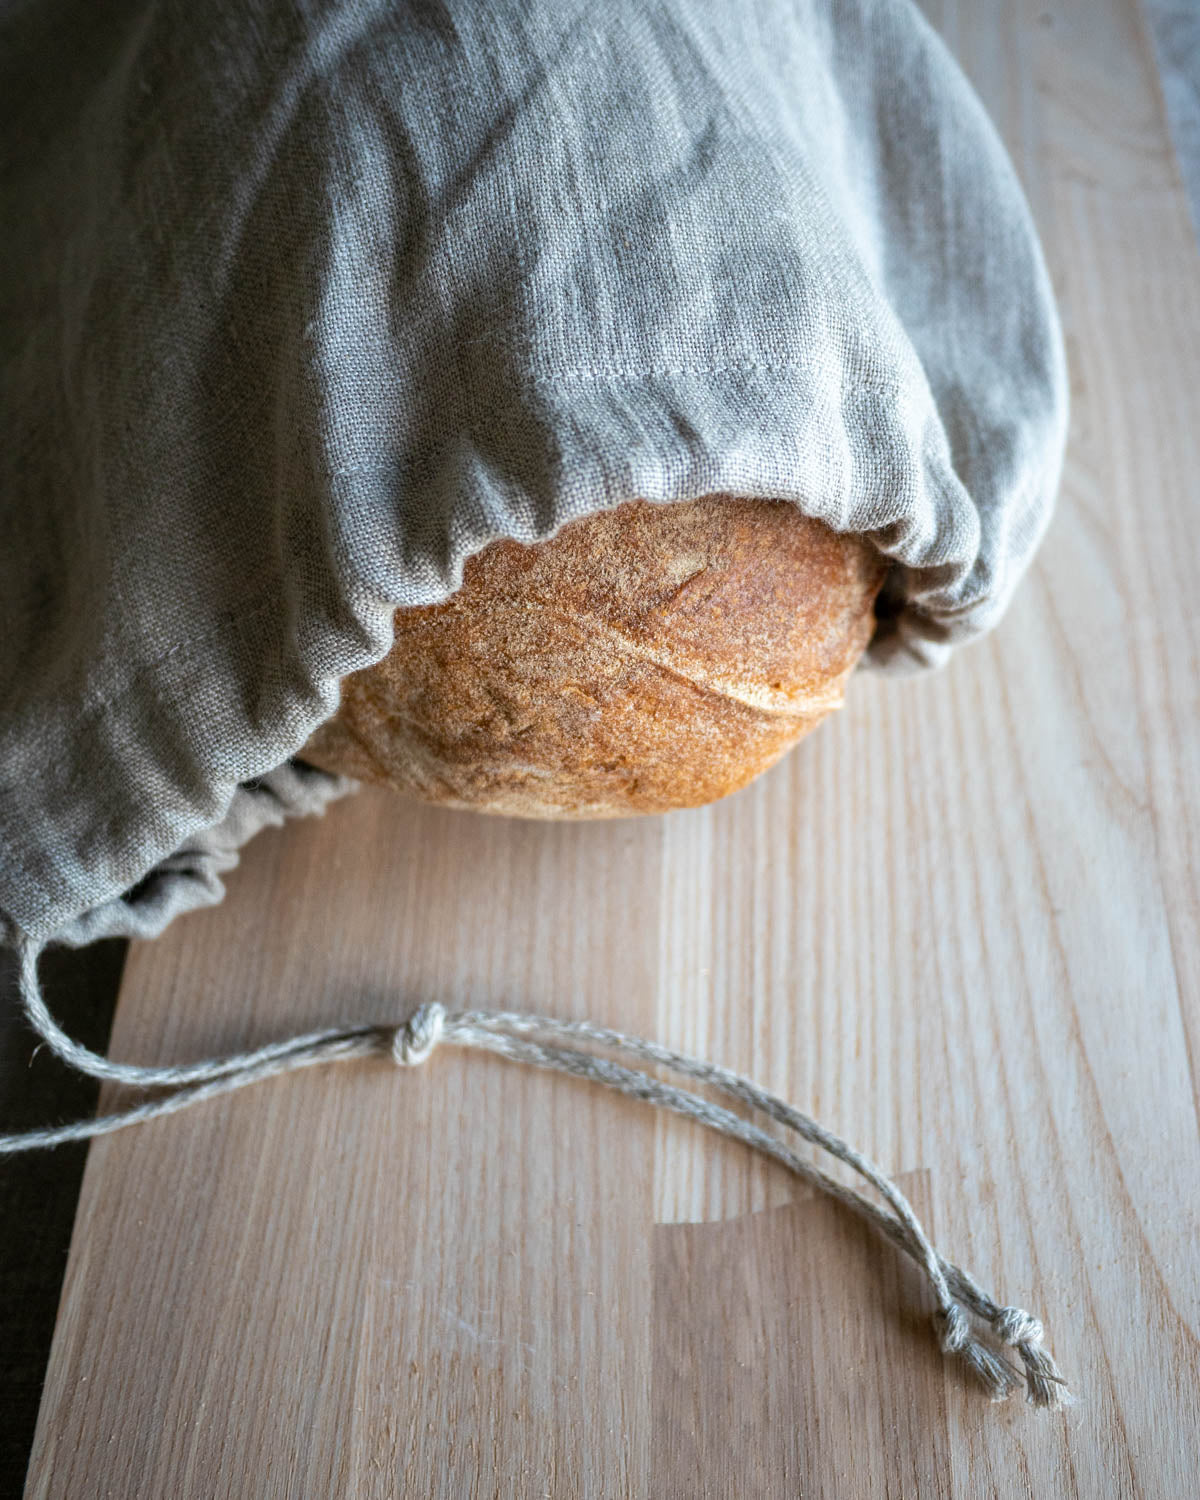 En brödpåse i naturell linnetyg som ligger på ett träbord. I påsen ligger ett bröd. Ett smalt linneband är fäst på påsen som du kan dra i för att stänga den.